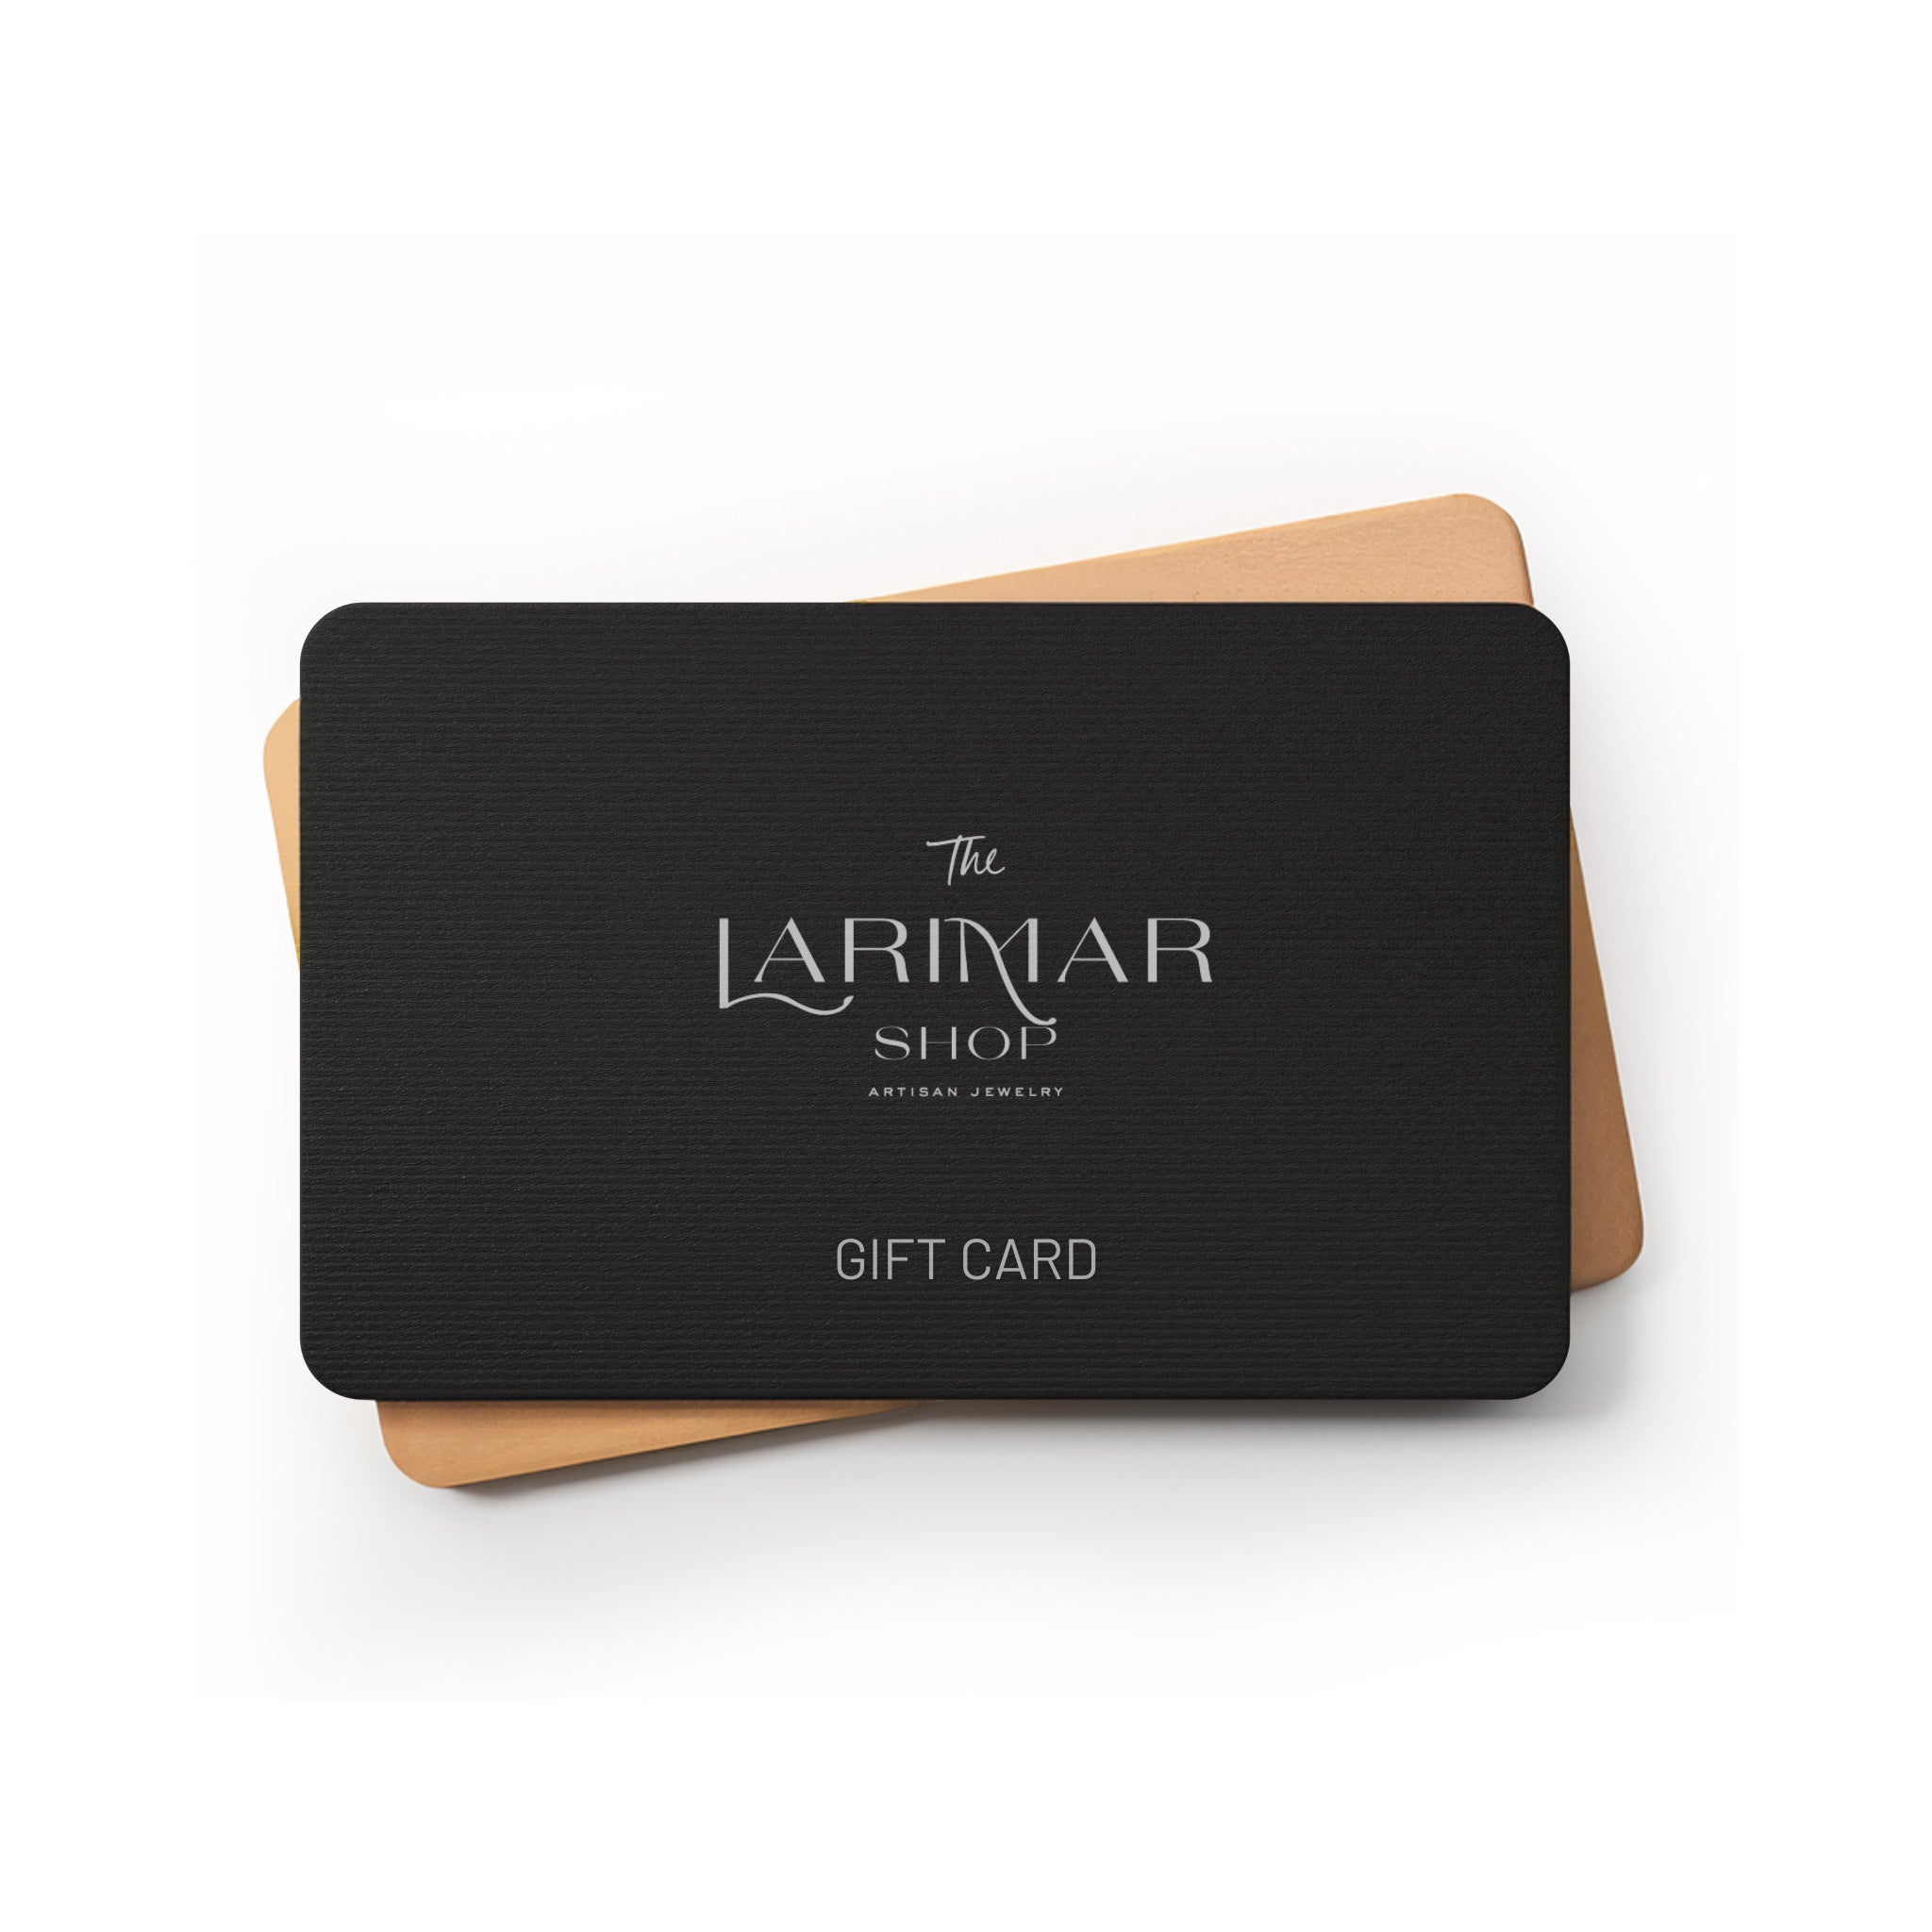 The Larimar Shop digital gift cards